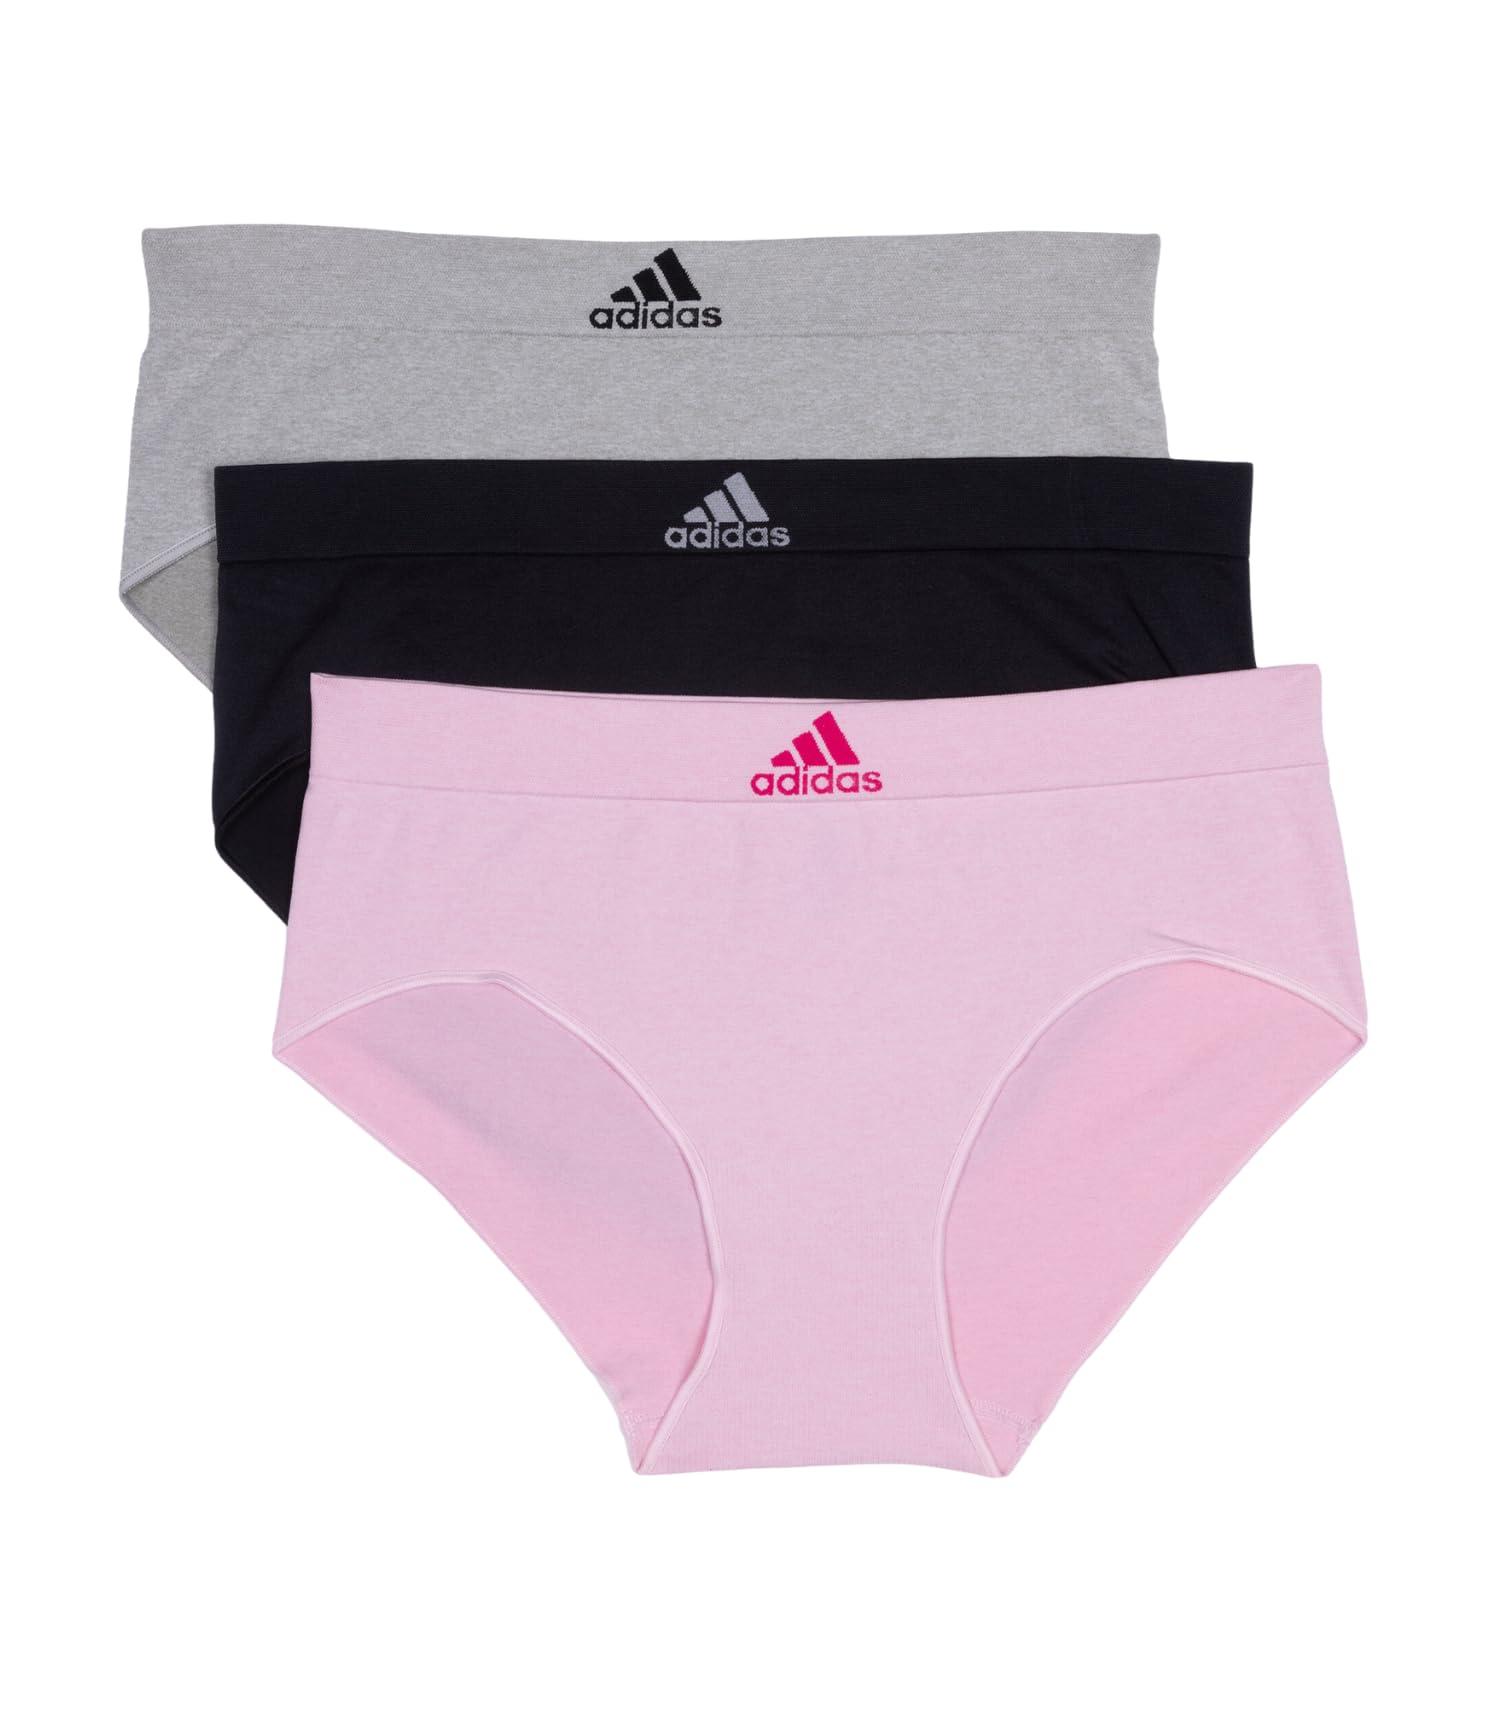 adidas Seamless Brief Panties 3-pack in Pink | Lyst